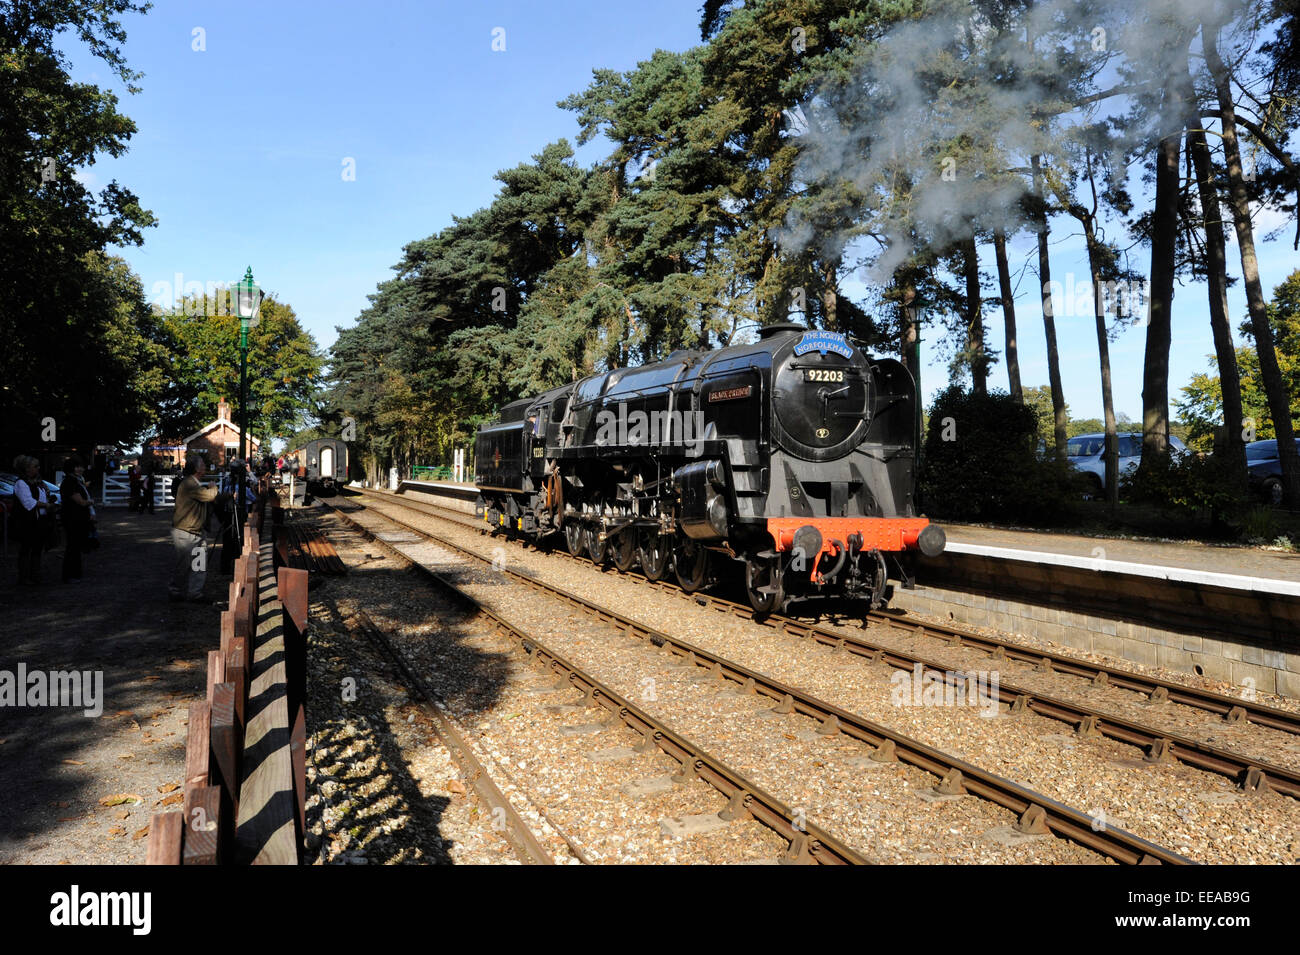 9F 2-10-0 Dampflokomotive Reihe 92203 "Black Prince" läuft Runde seinen Zug Haltestelle Holt auf der North Norfolk Railway zwischen Holt und Sheringham, in der Nähe von Norwich, Norfolk. Tier- und Eisenbahn Künstler David Shepherd restauriert die Dampfmaschine zum Laufen bringen Stockfoto